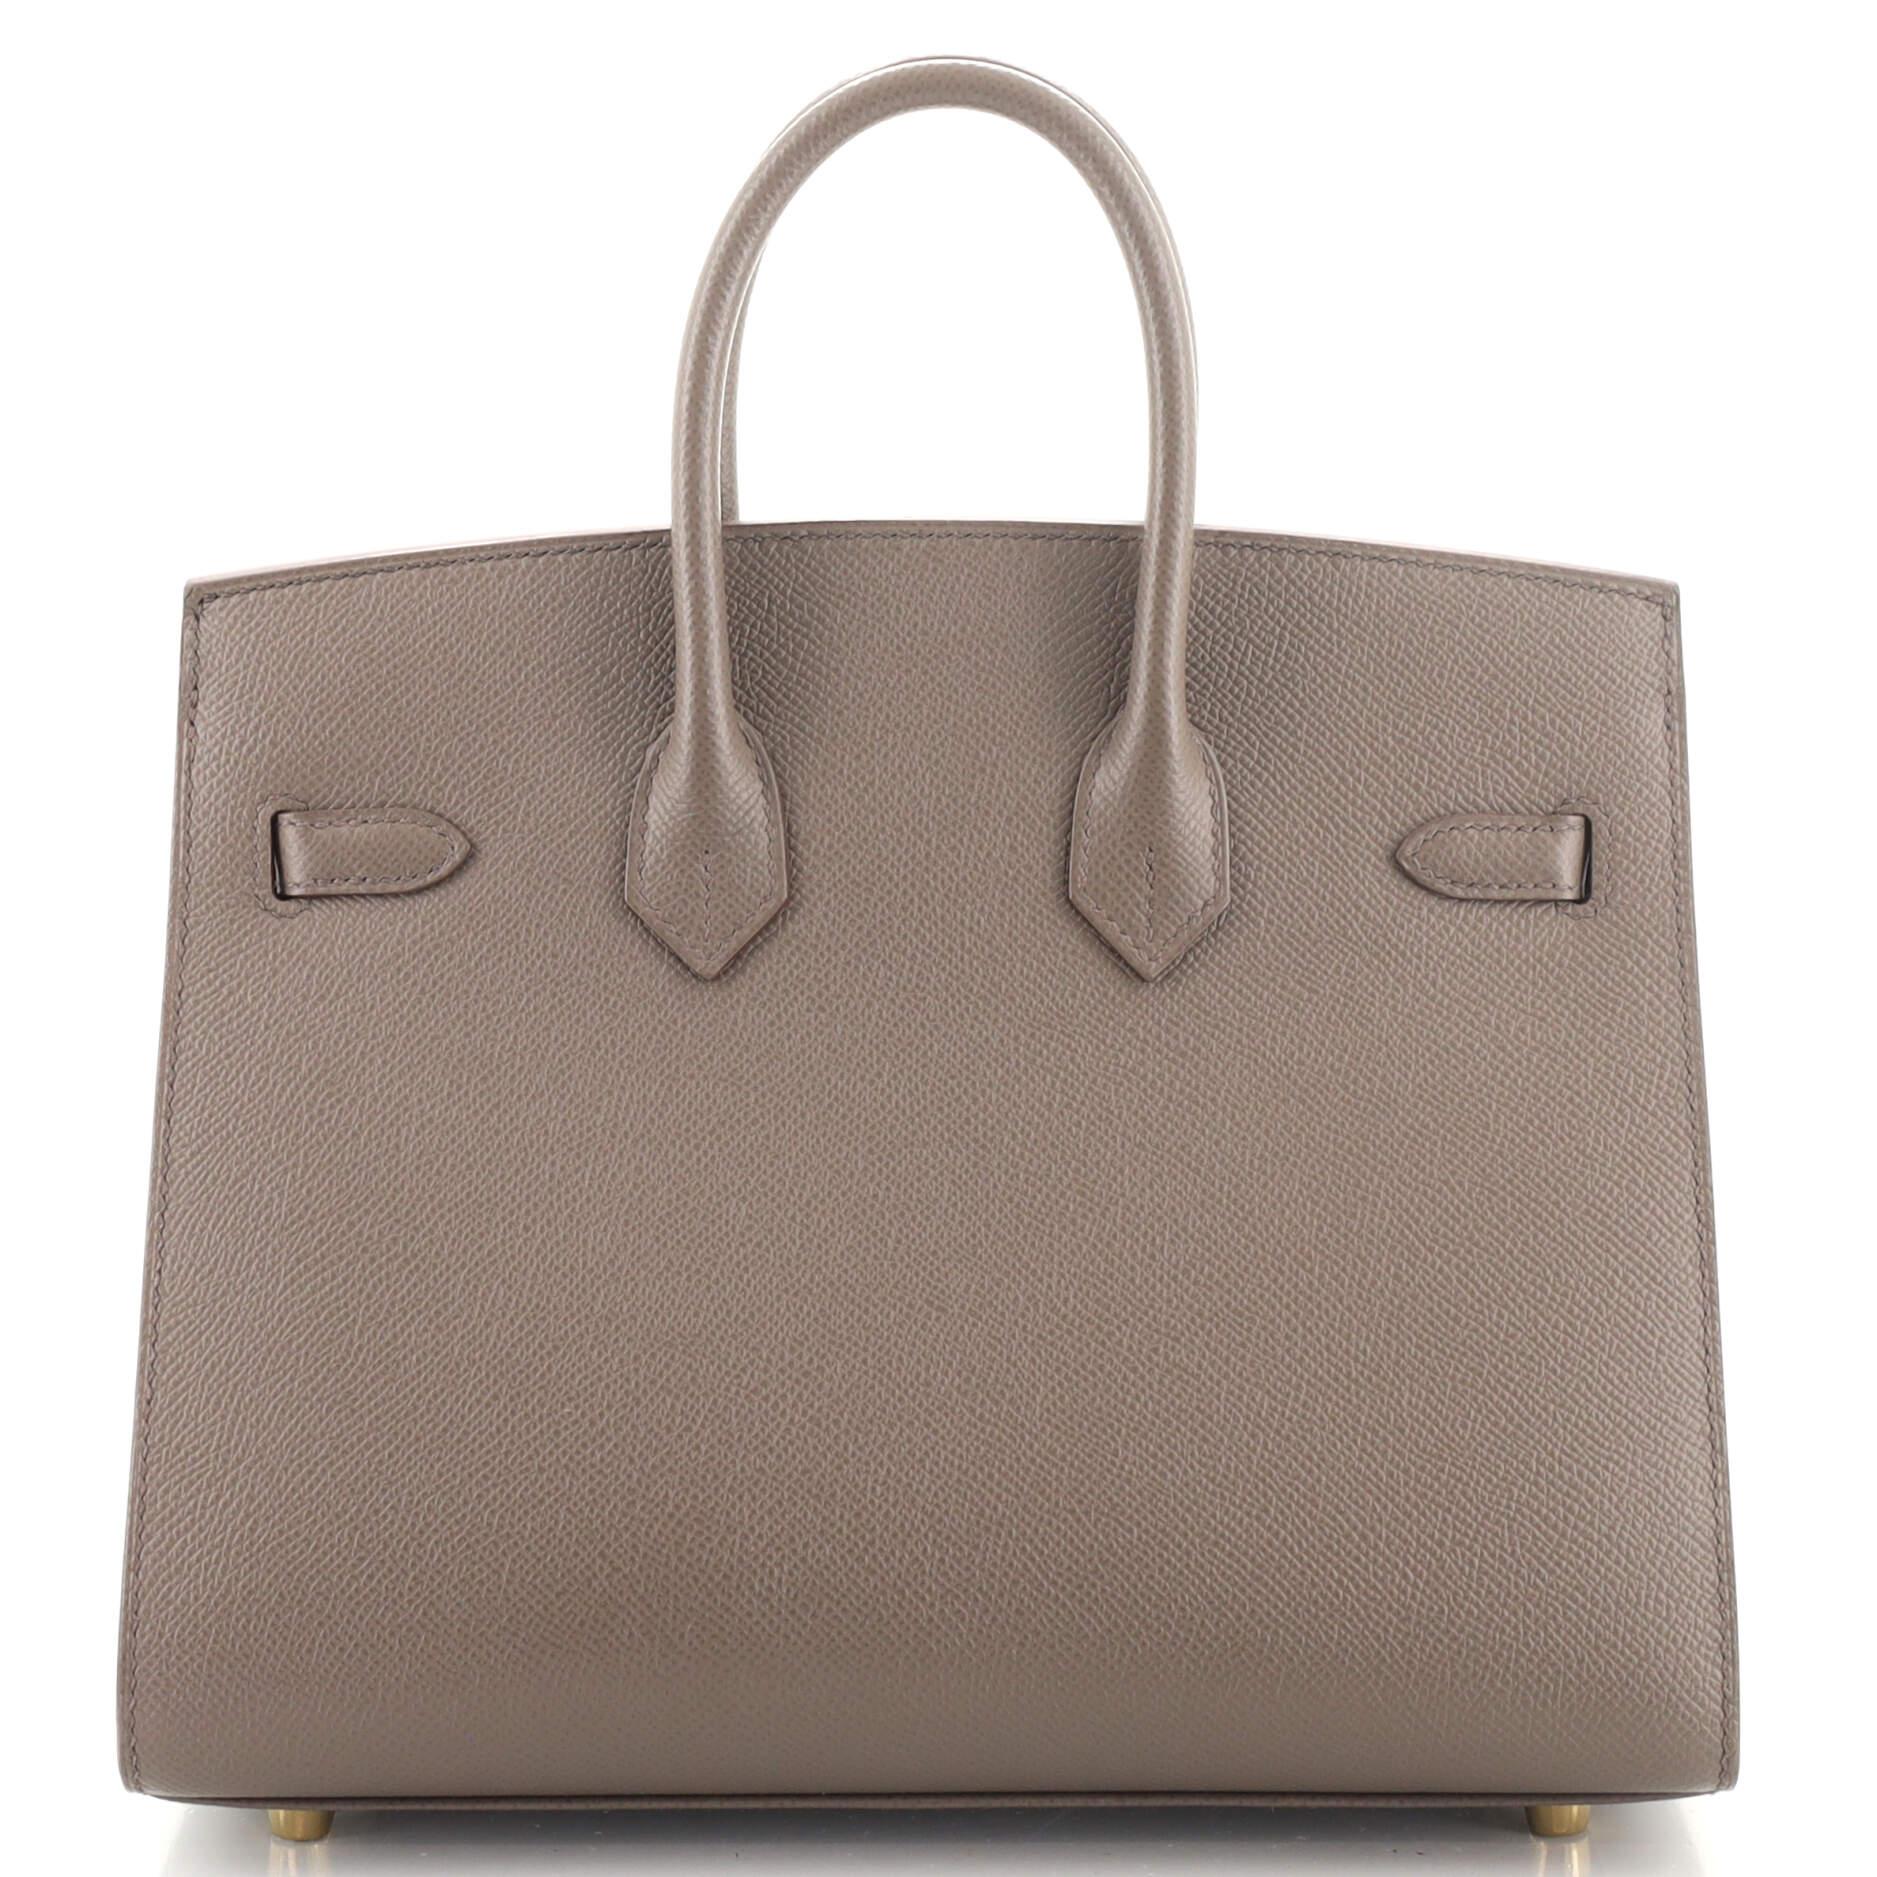 Women's Hermes Birkin Sellier Bag Etain Epsom with Gold Hardware 25